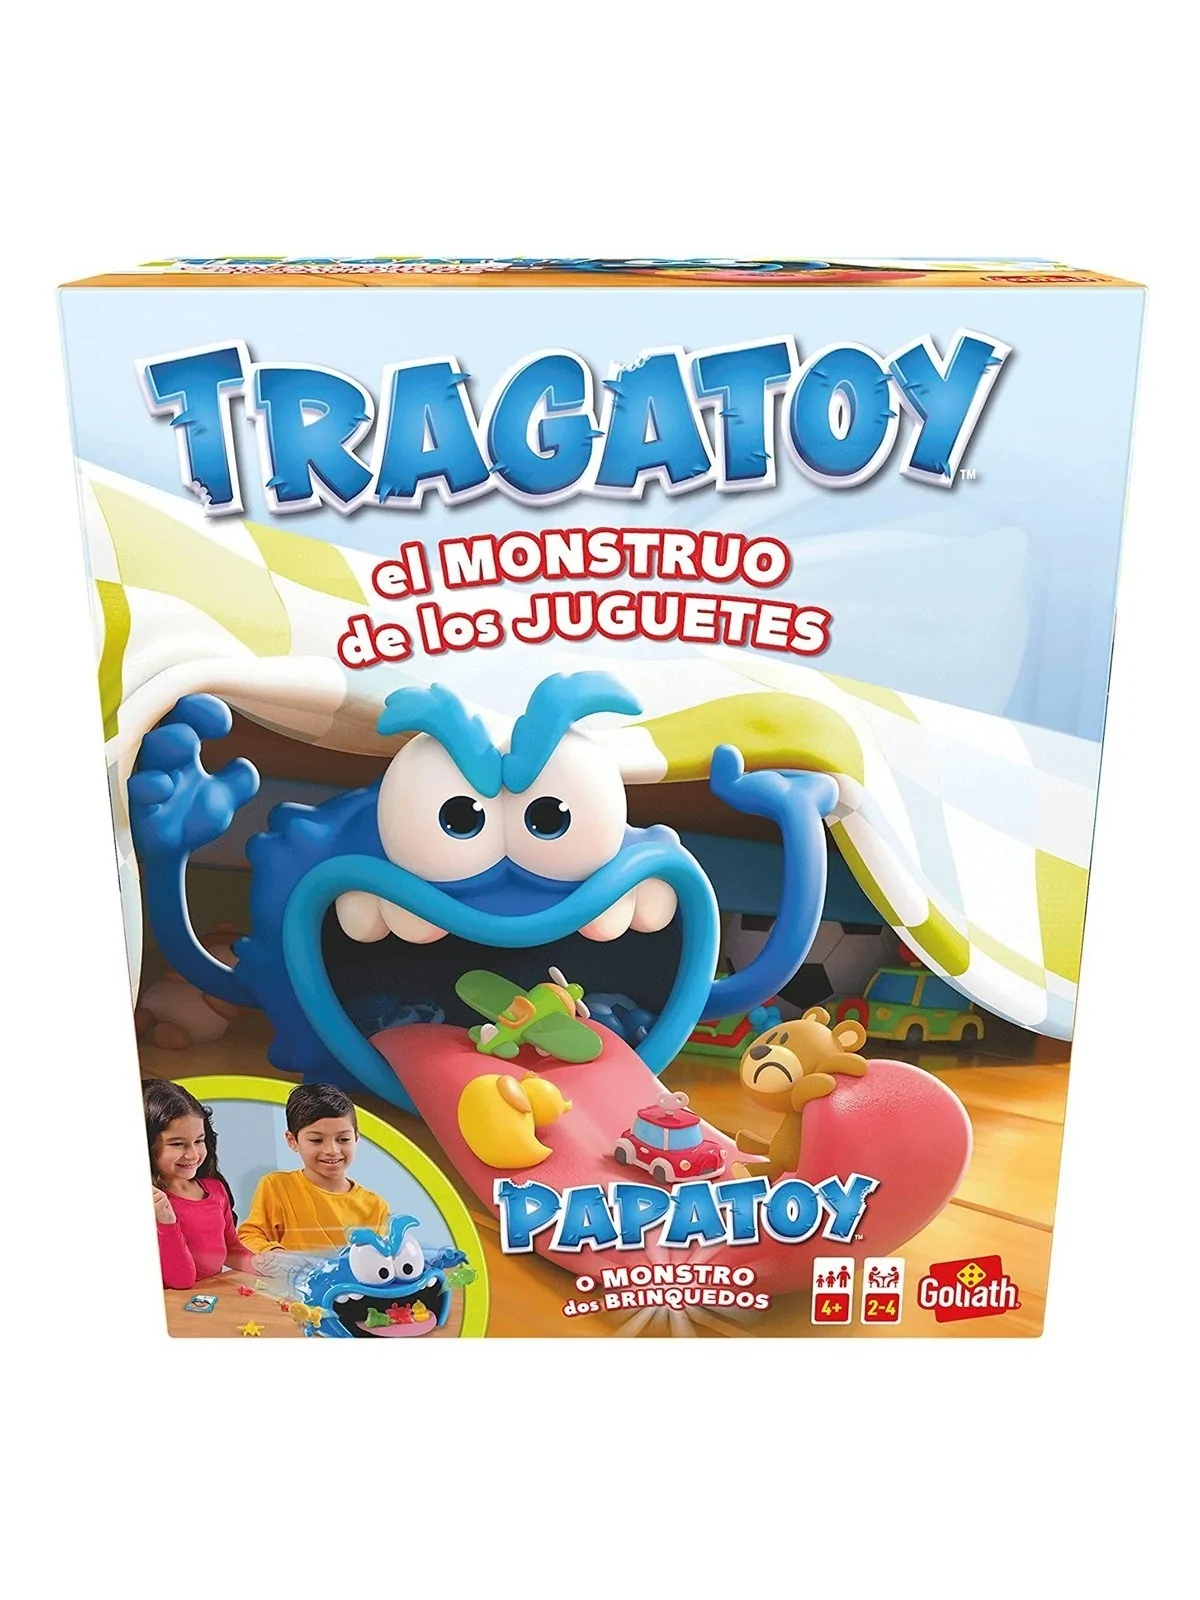 Comprar Tragatoy barato al mejor precio 32,08 € de Goliath bv